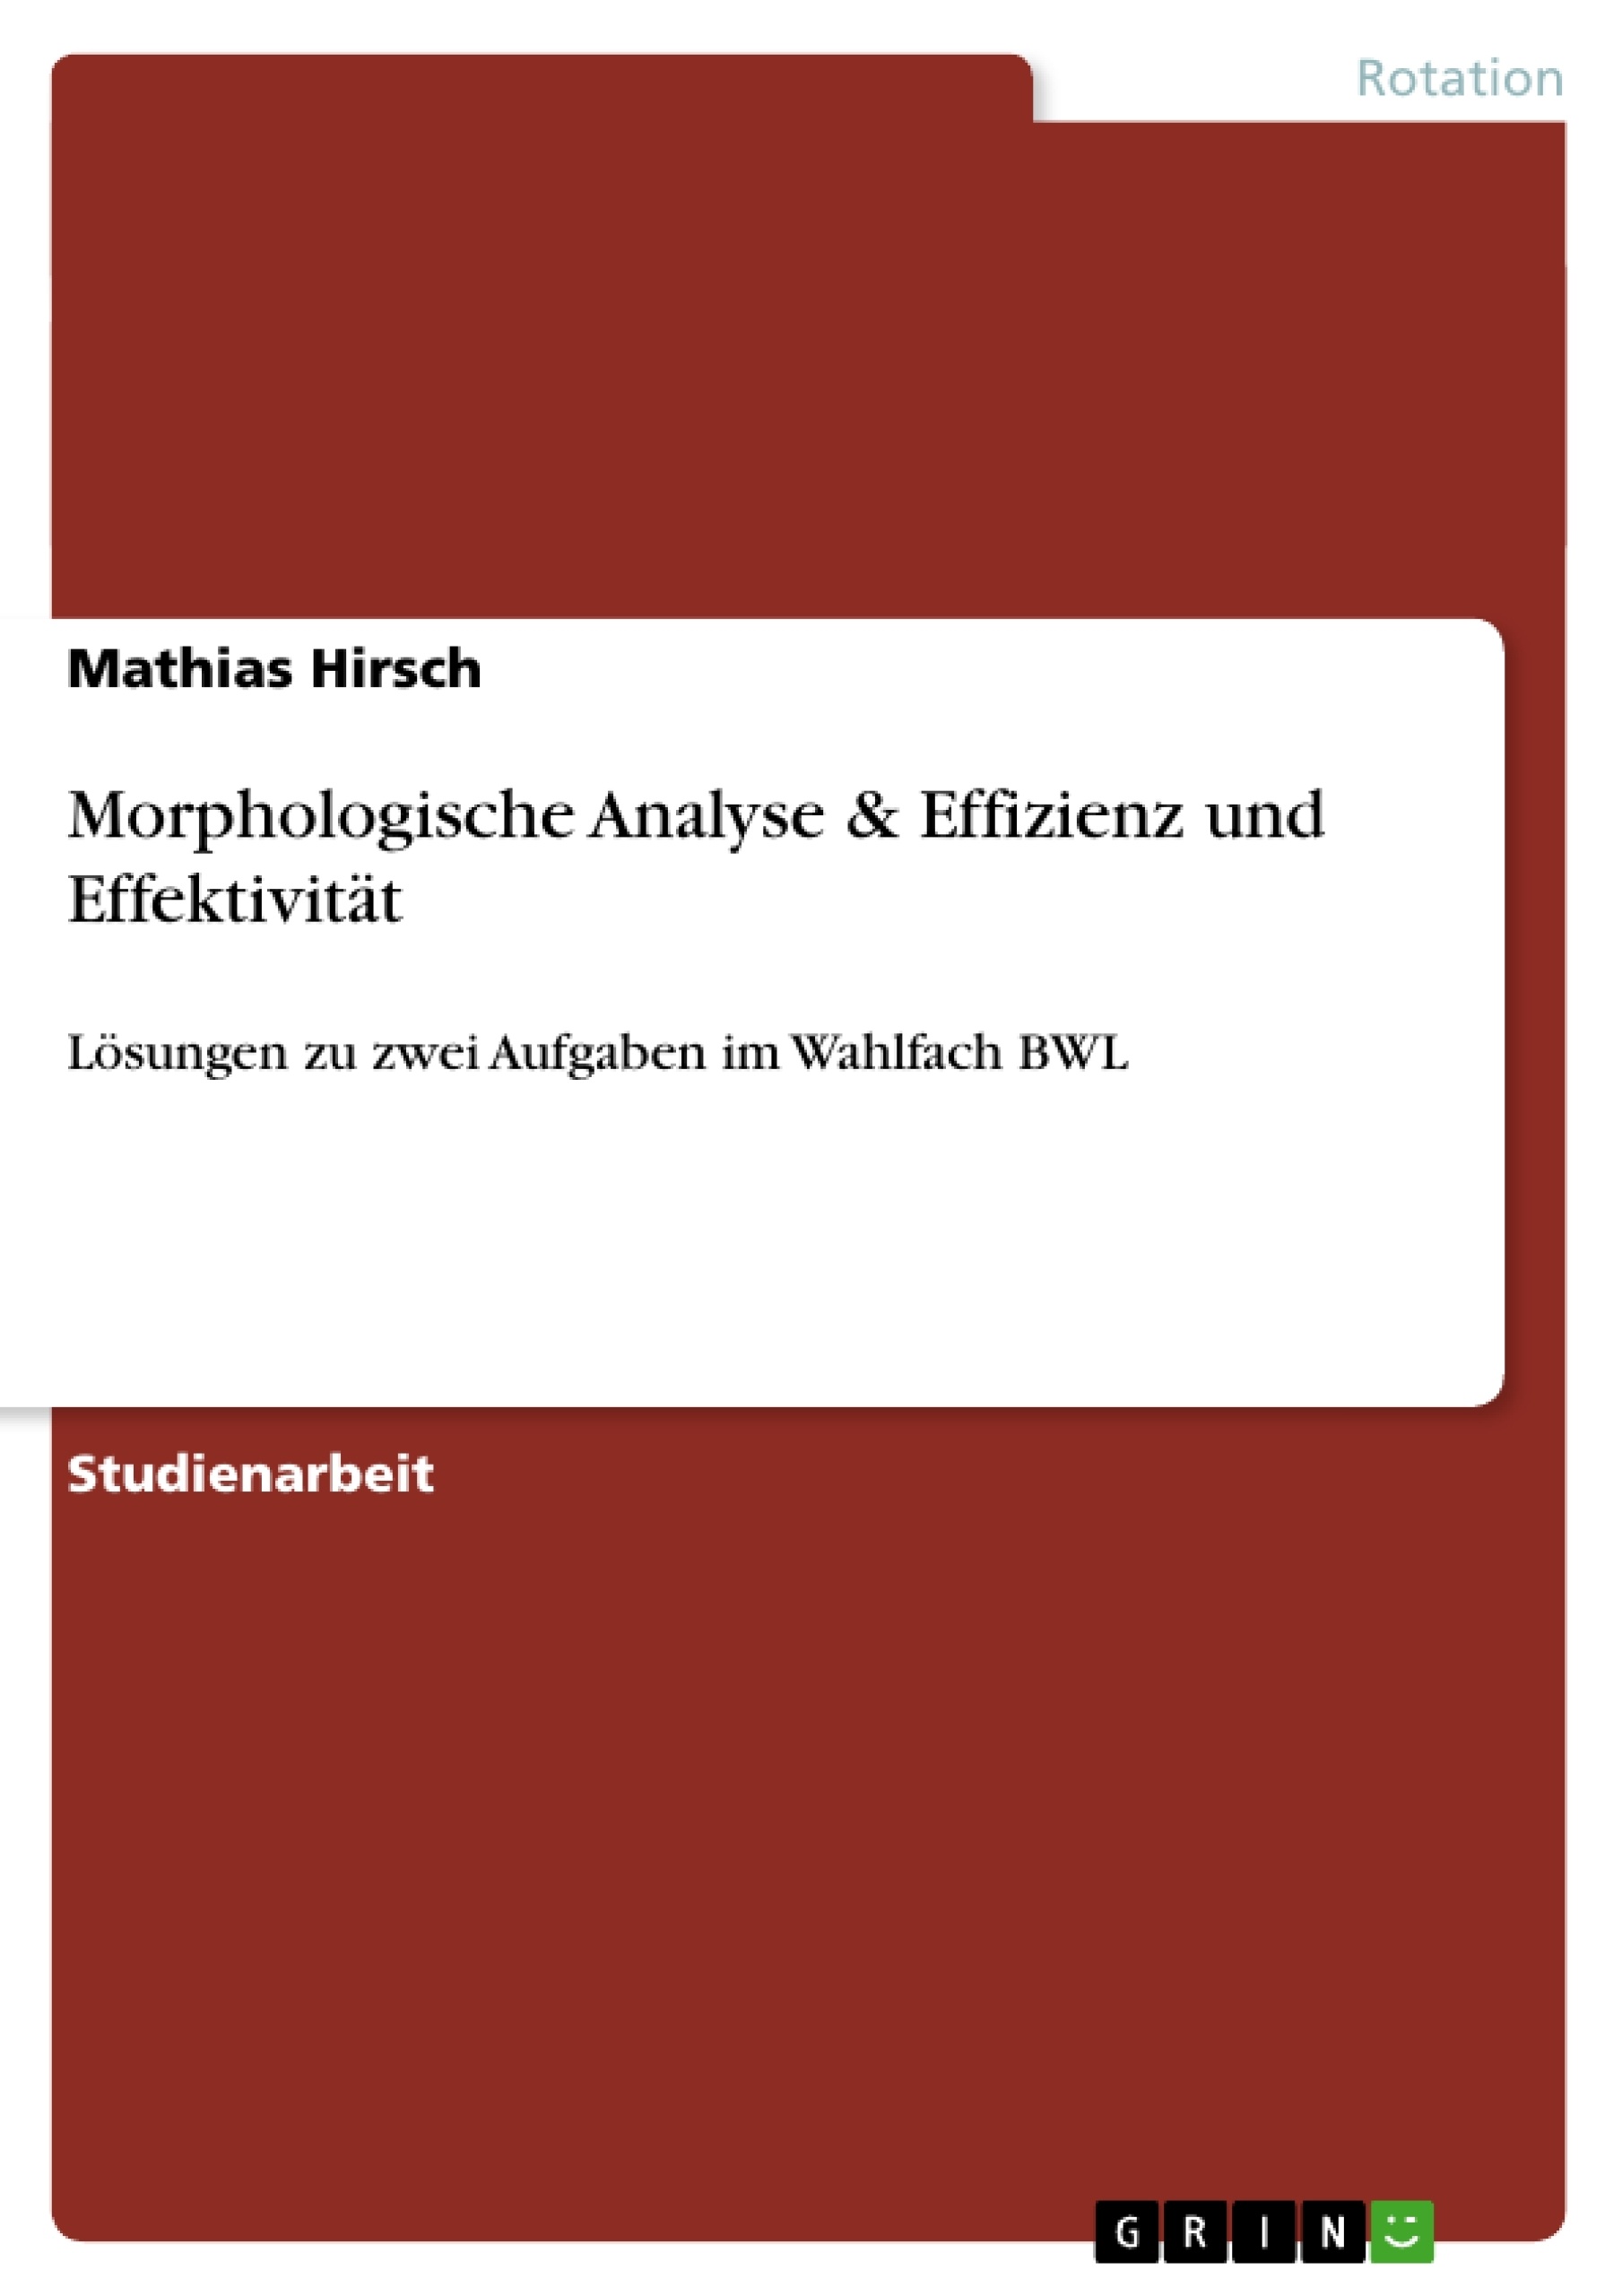 Title: Morphologische Analyse & Effizienz und Effektivität